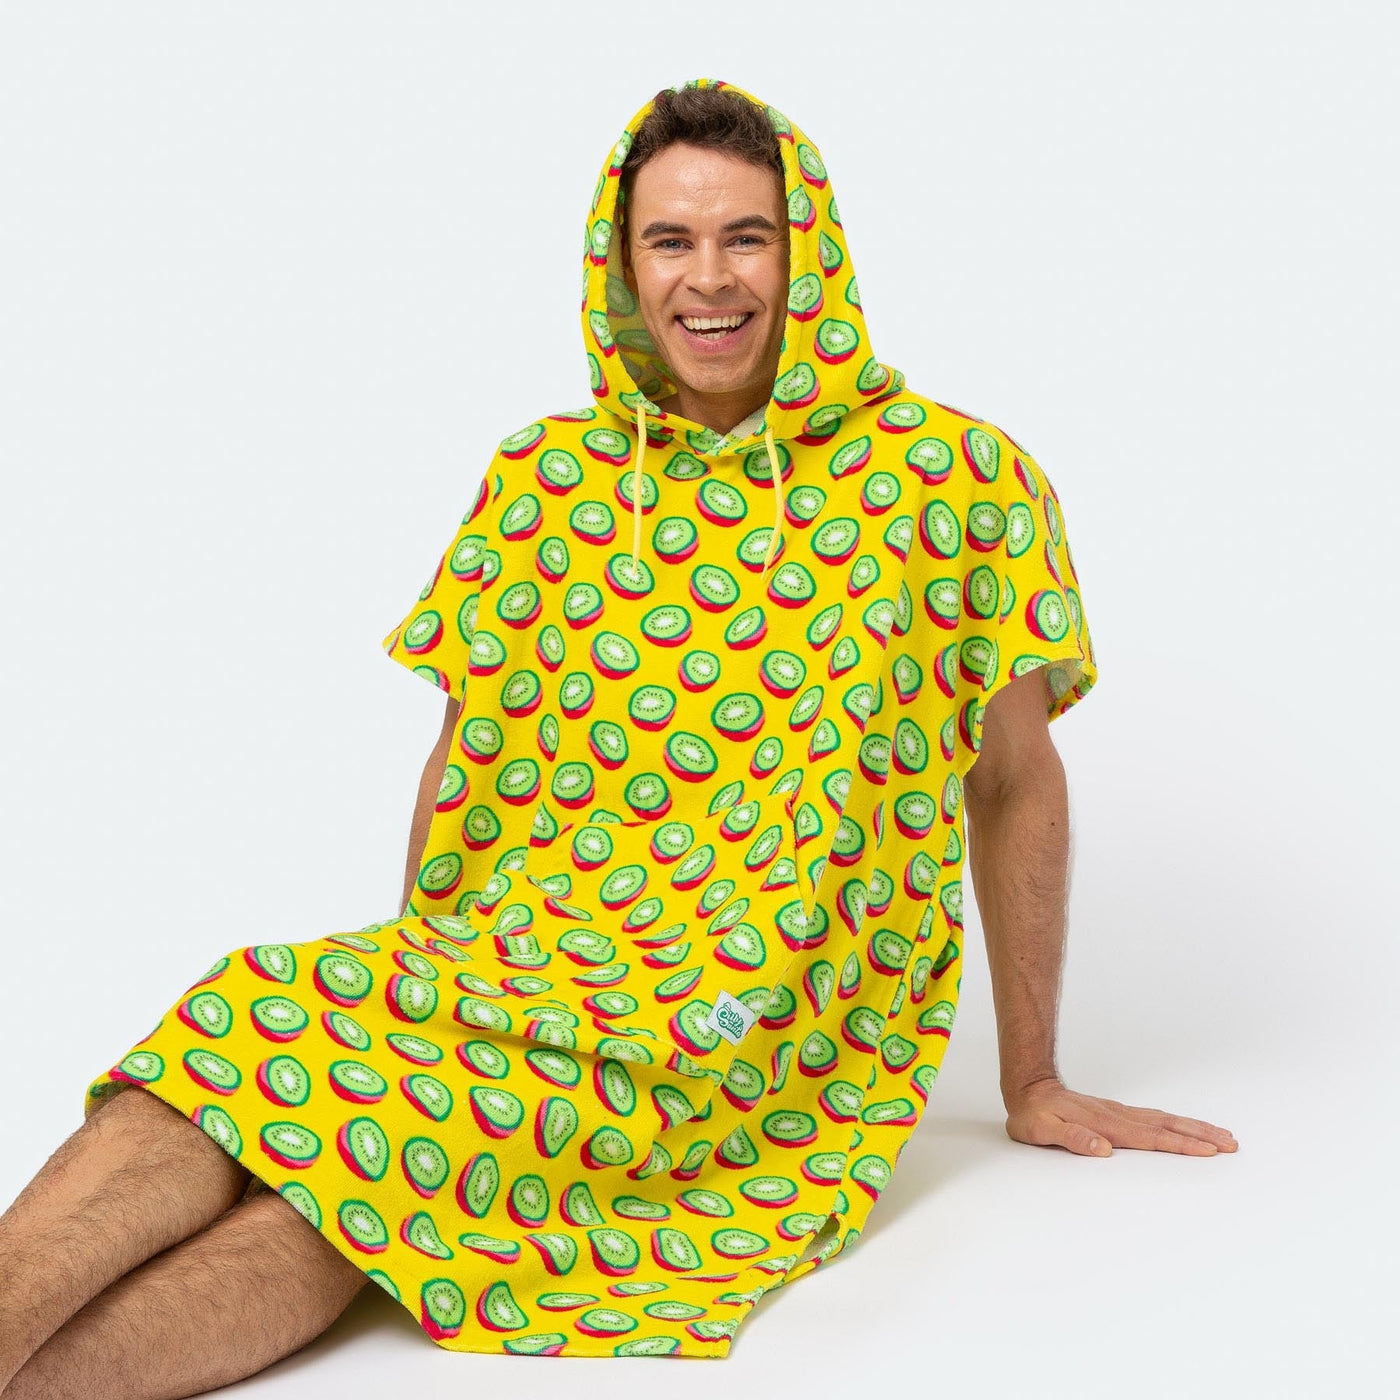 Tropische Kiwi Towel Poncho